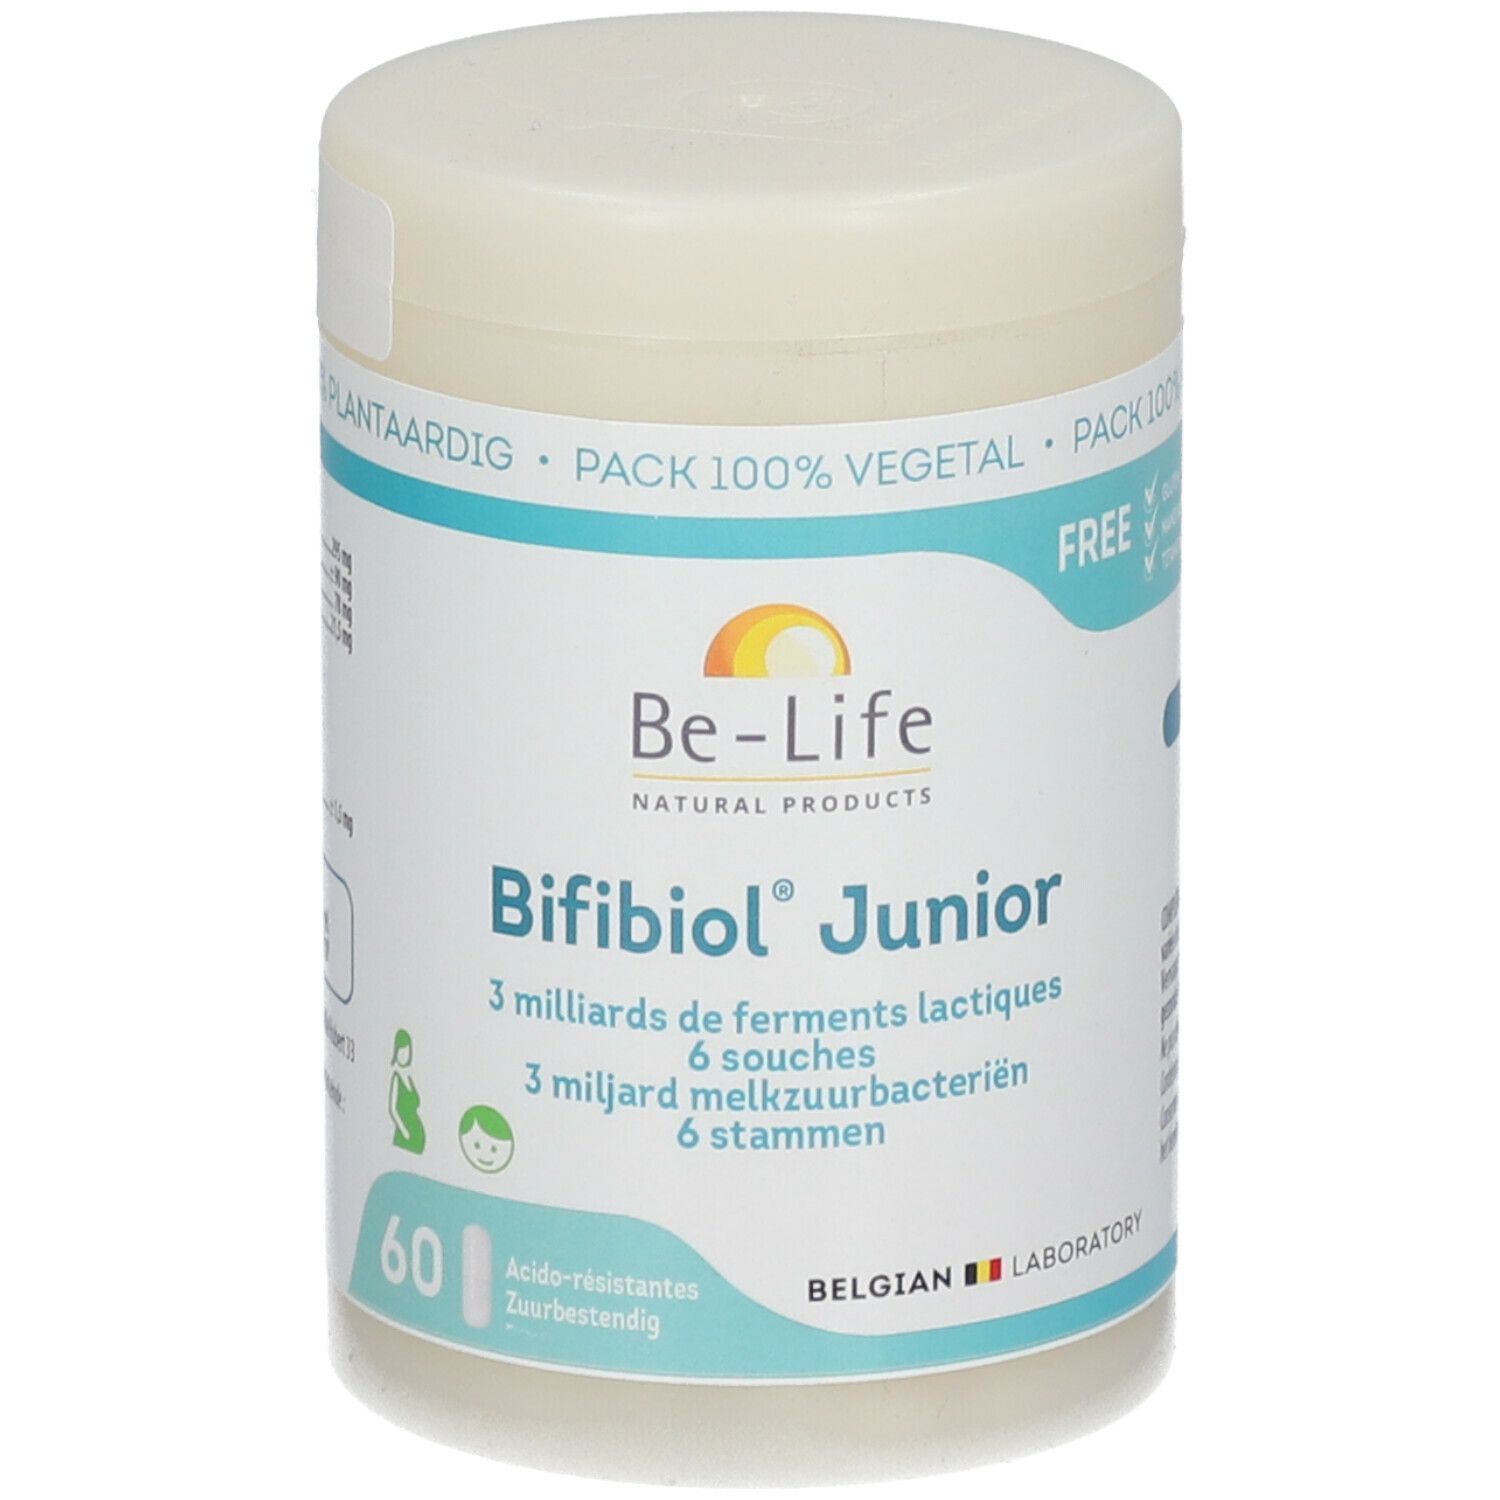 Be-Life Bifibiol® Junior